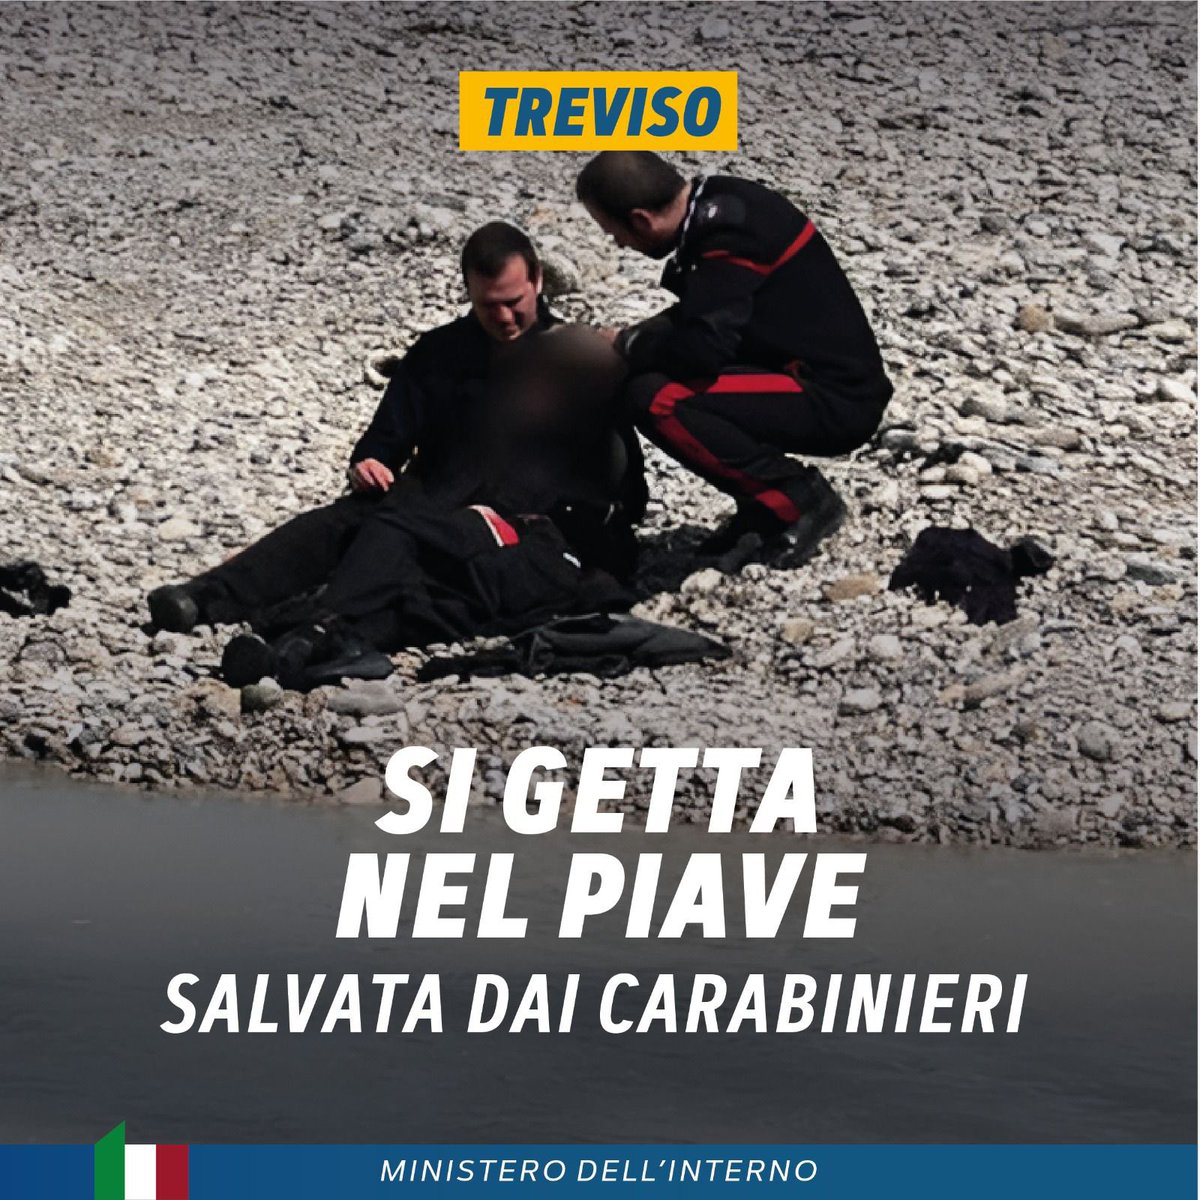 Aveva deciso di lasciarsi andare gettandosi nelle acque del fiume Piave, a Treviso. Senza pensarci due volte, i @_Carabinieri_ si sono tuffati in acqua, riuscendo a riportare in riva la donna, coprendola con le loro giacche per scaldarla. Un gesto eroico che testimonia…